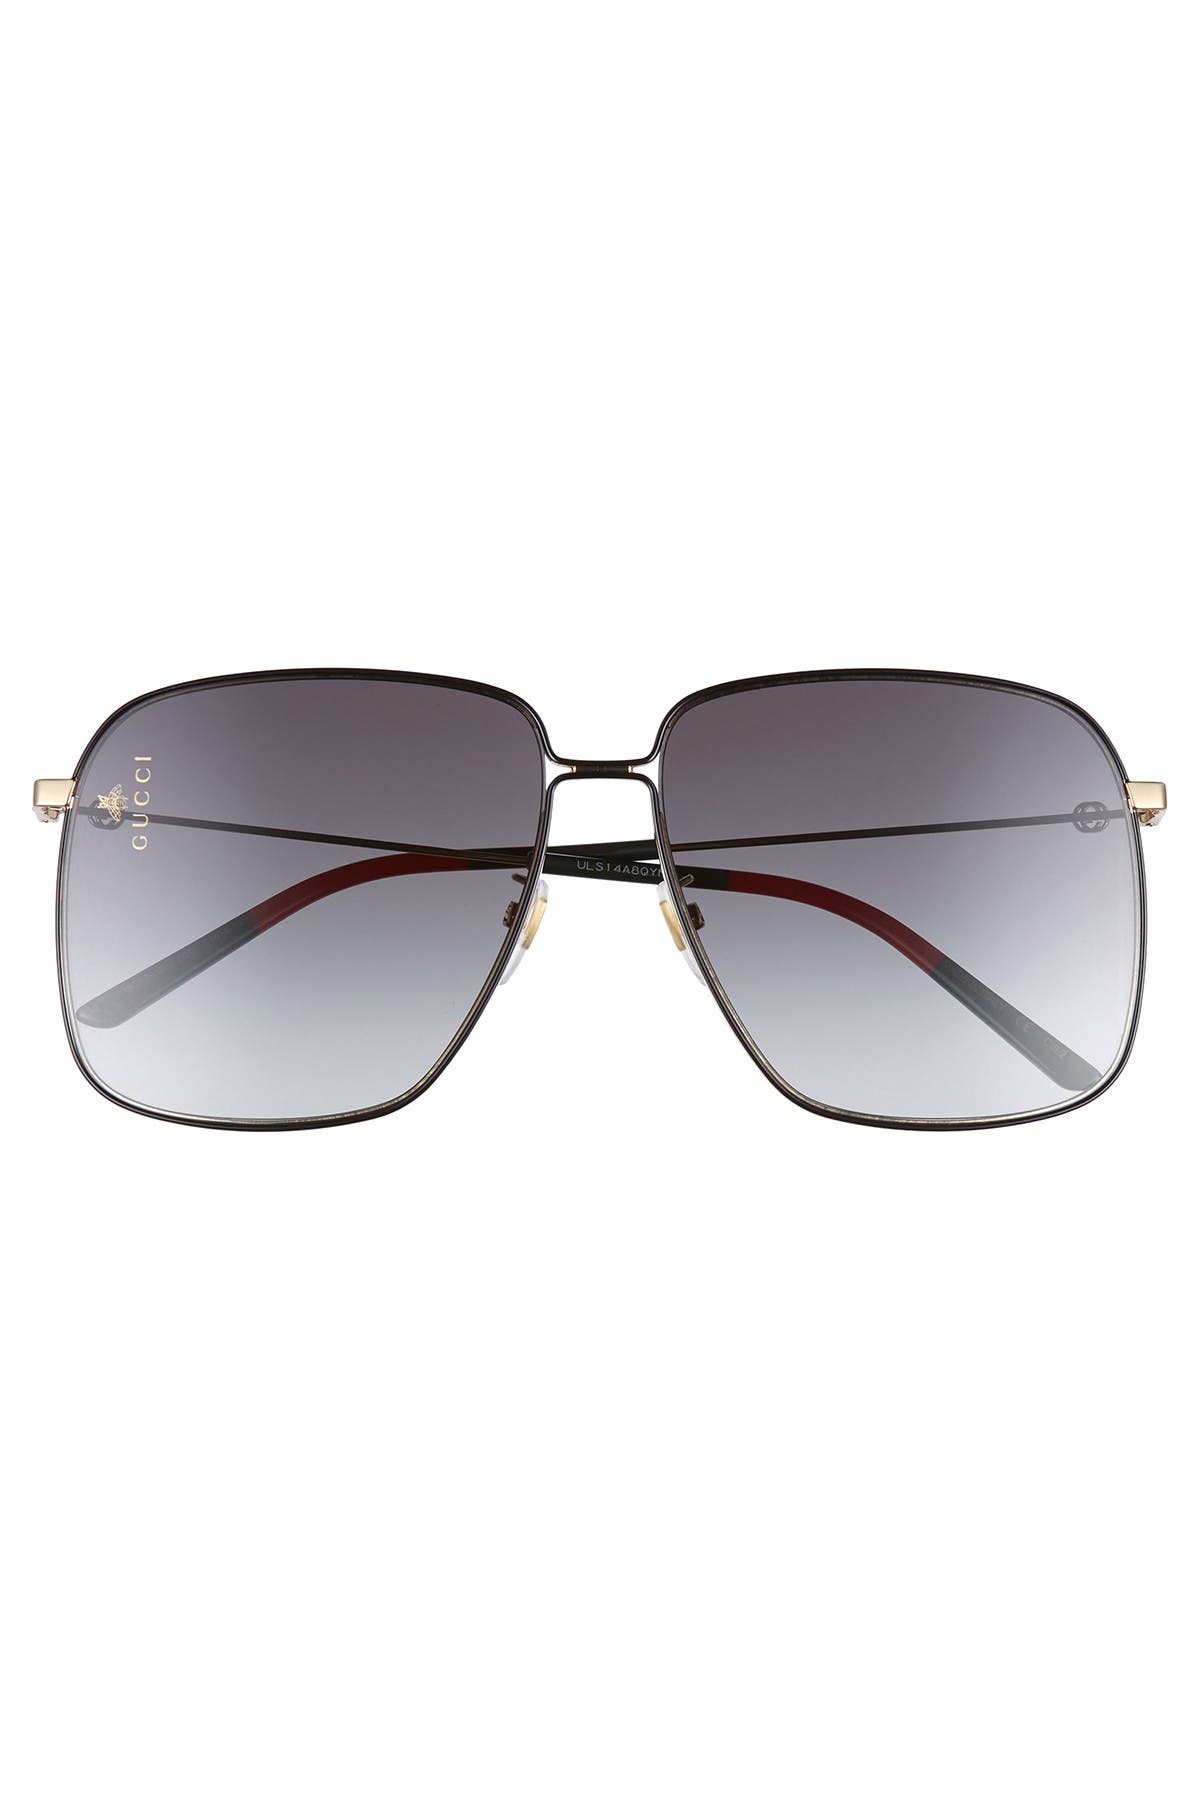 gucci square aviator sunglasses